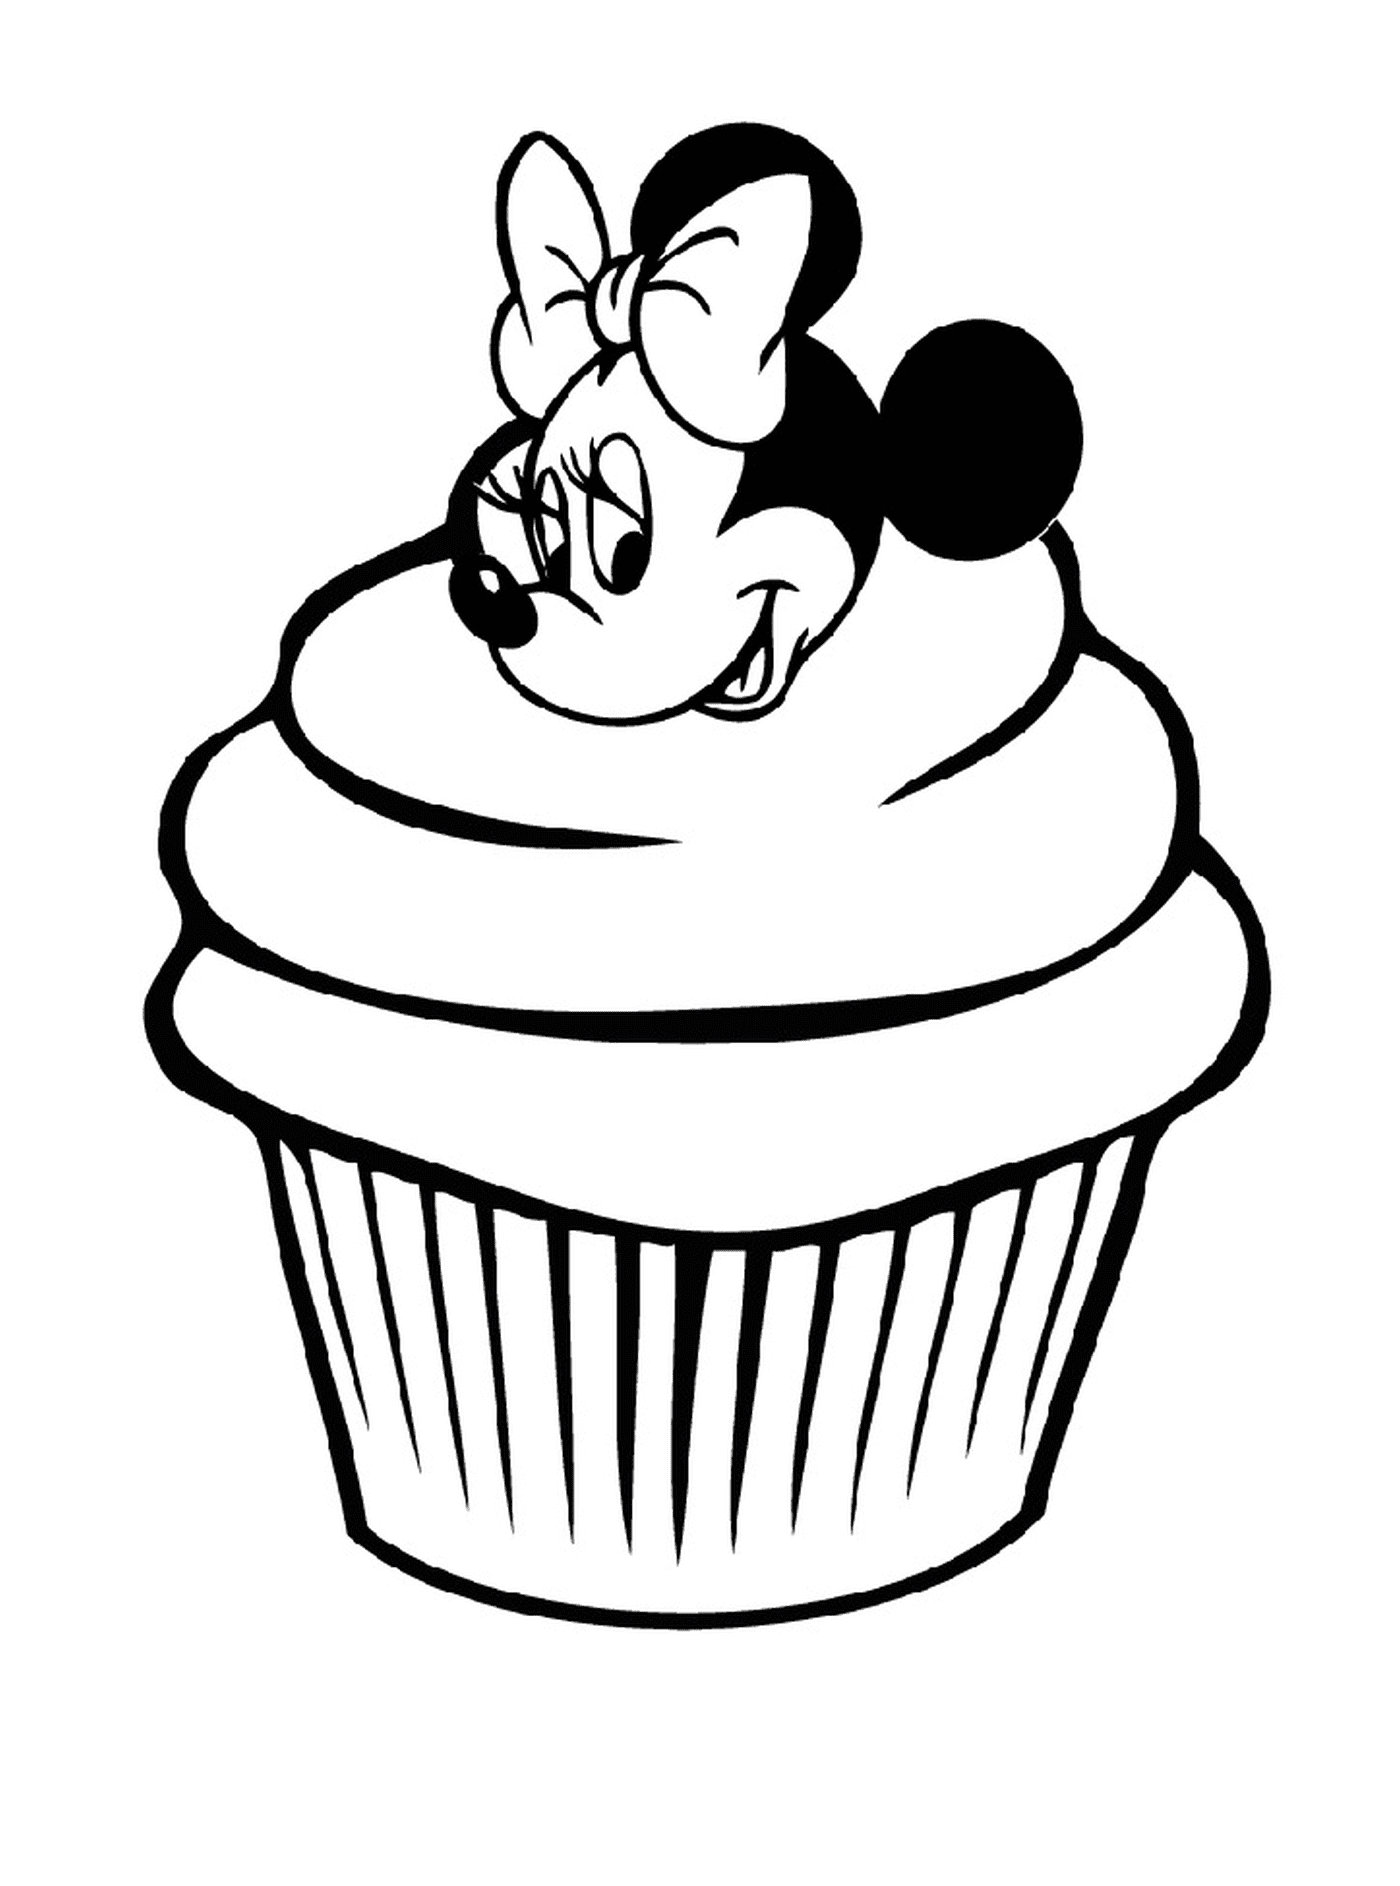   Un cupcake Minnie Mouse de Disney 